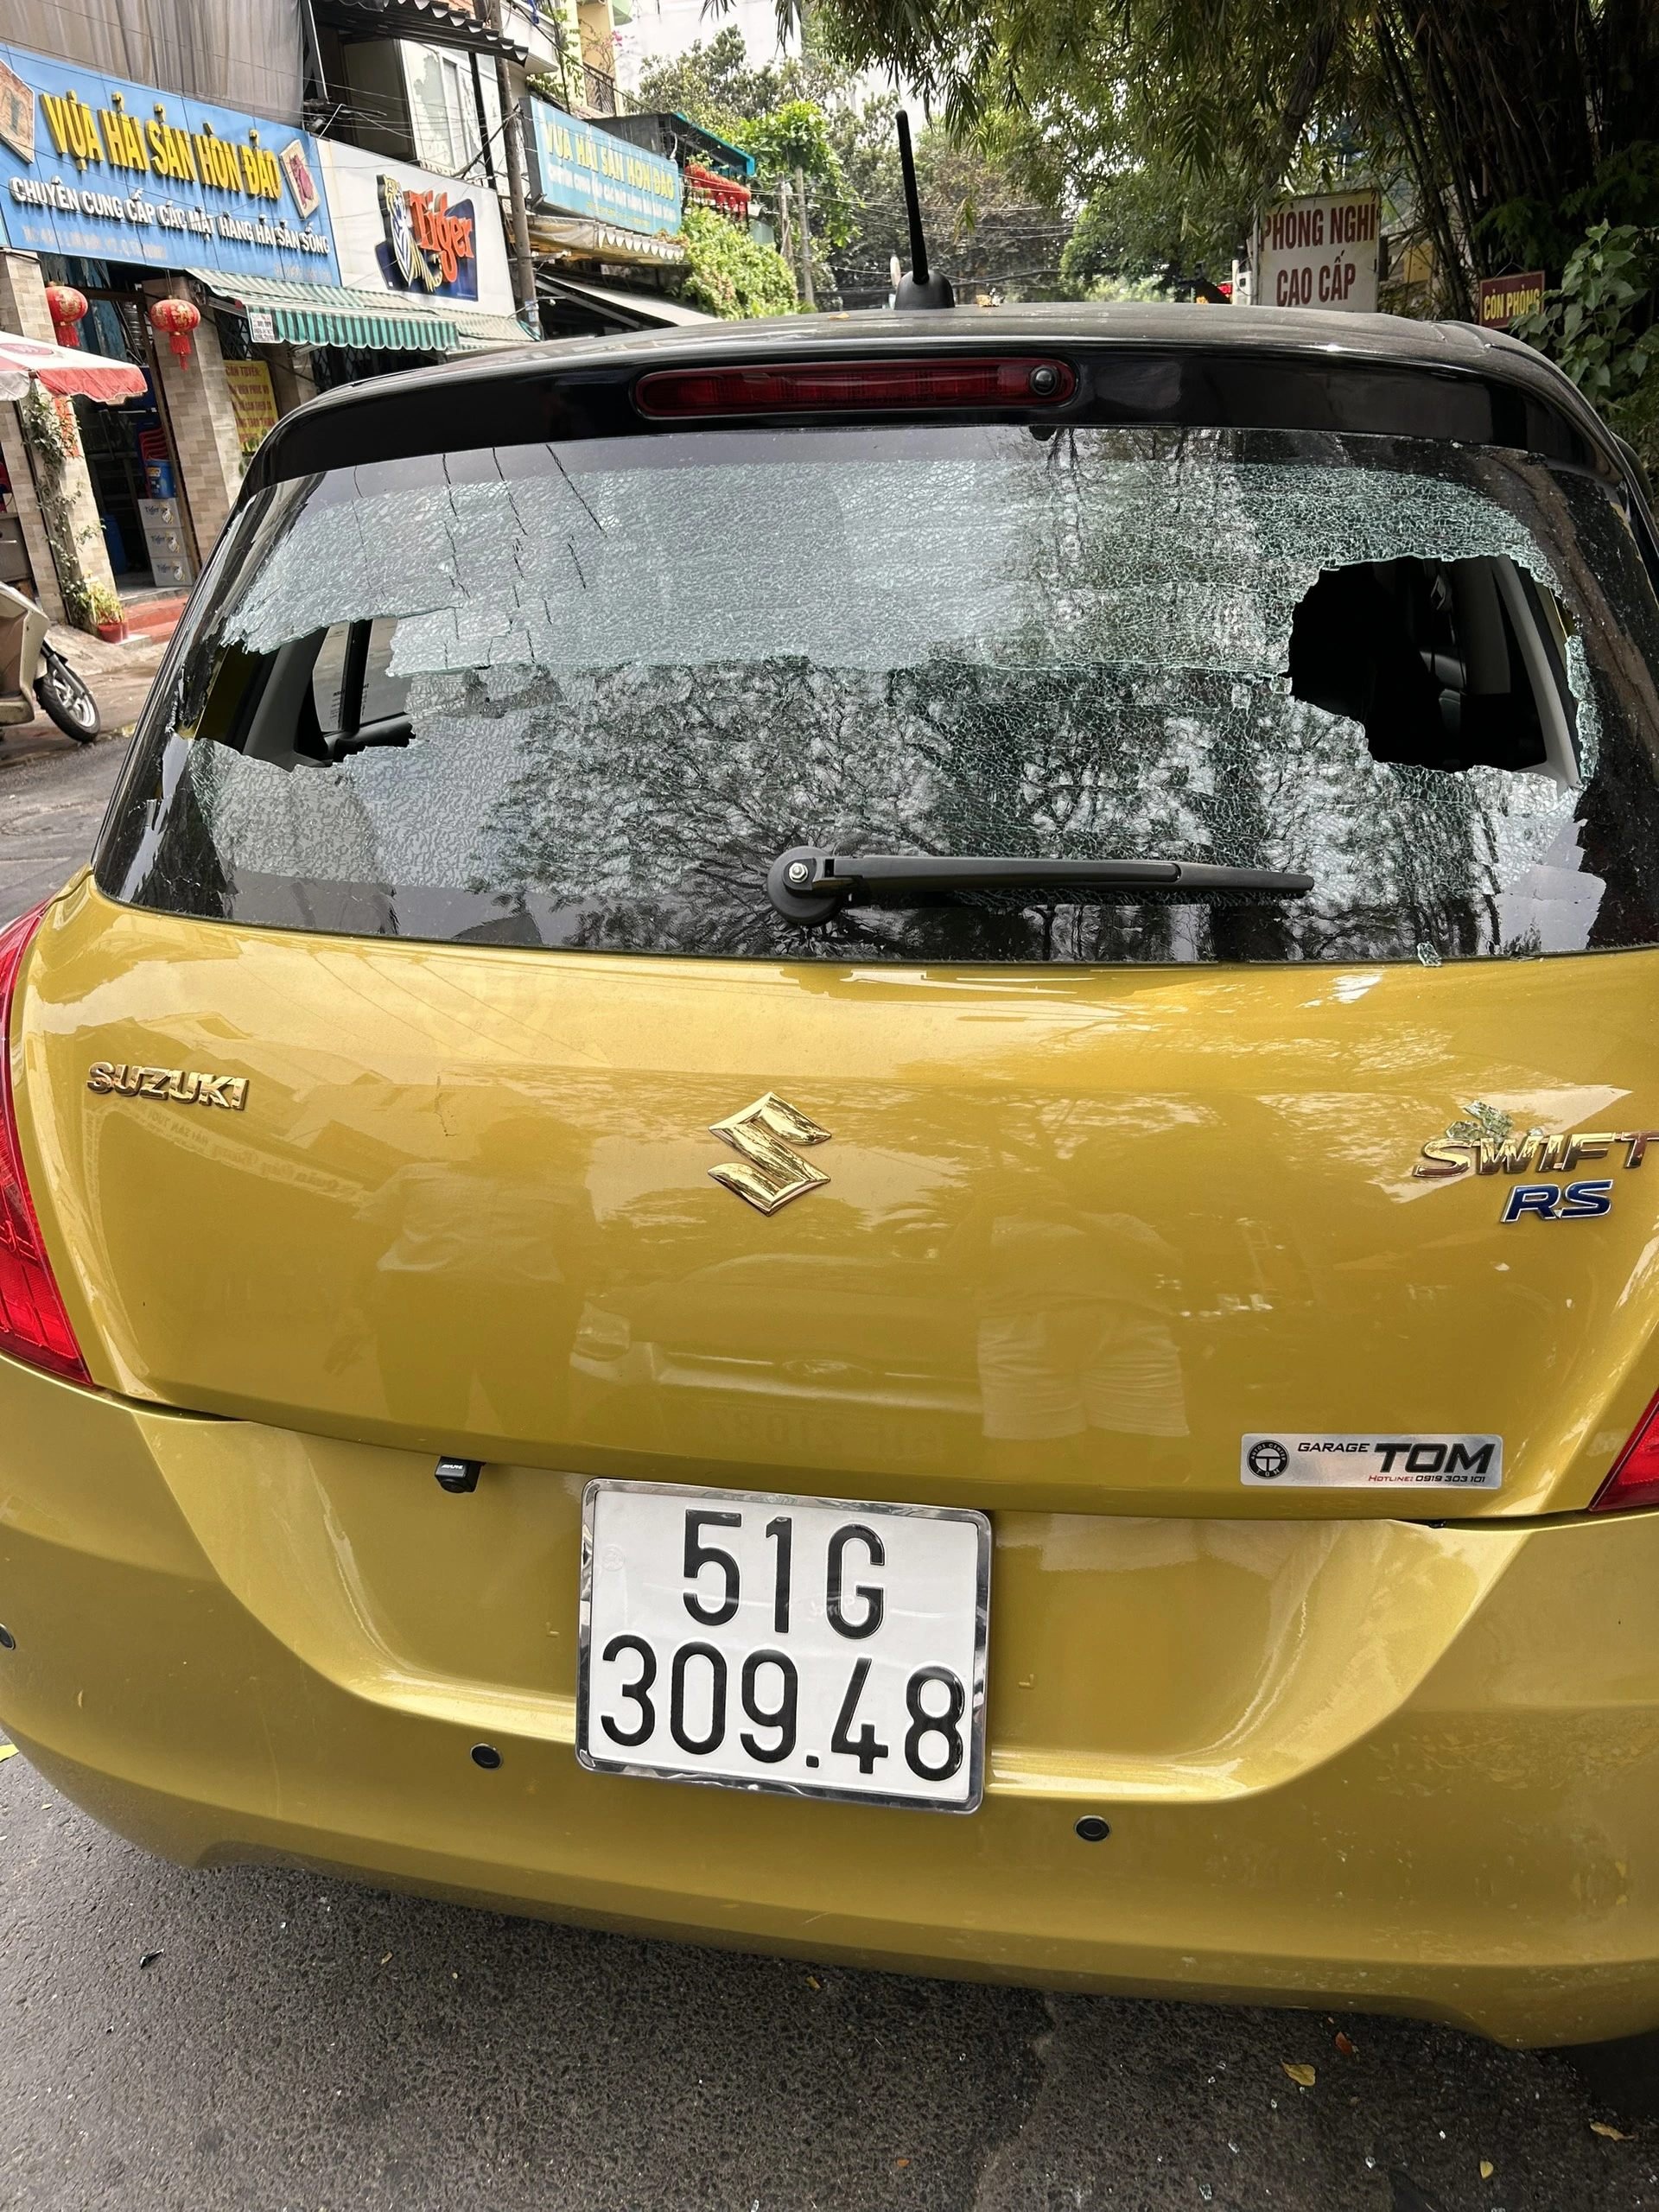 Cửa kính, ô tô, mái nhà dân gần sân bay Tân Sơn Nhất bỗng bị bắn bi sắt, có người bị bắn vào chân- Ảnh 2.